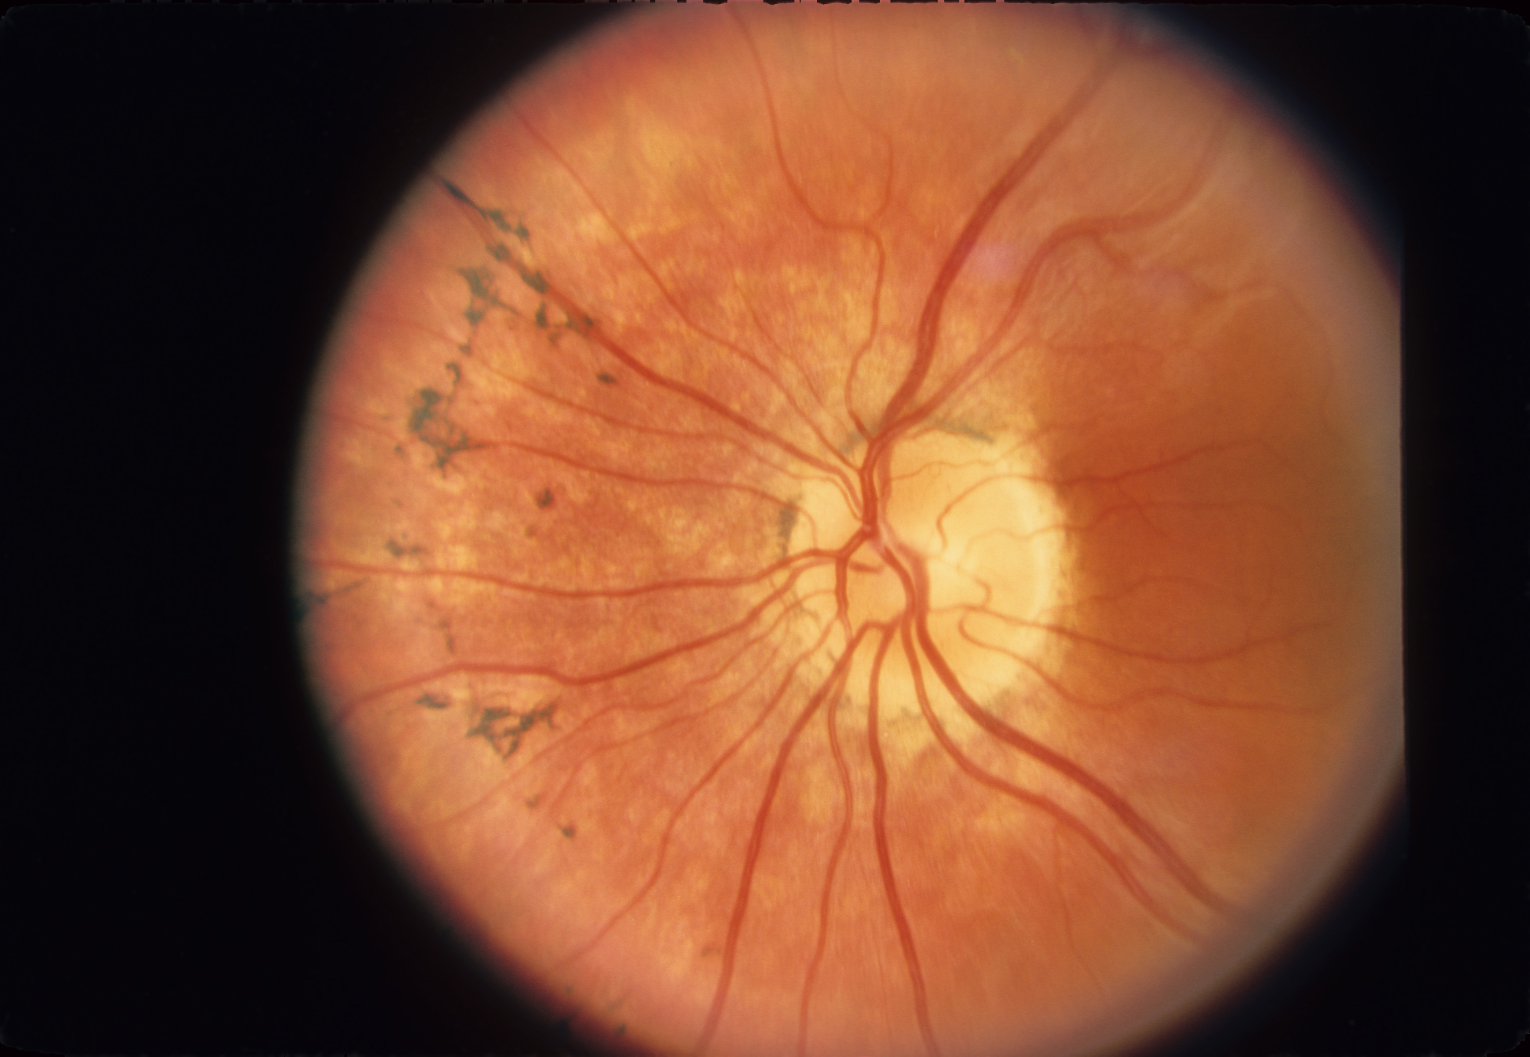 Fundus in autosomal recessive retinitis pigmentosa